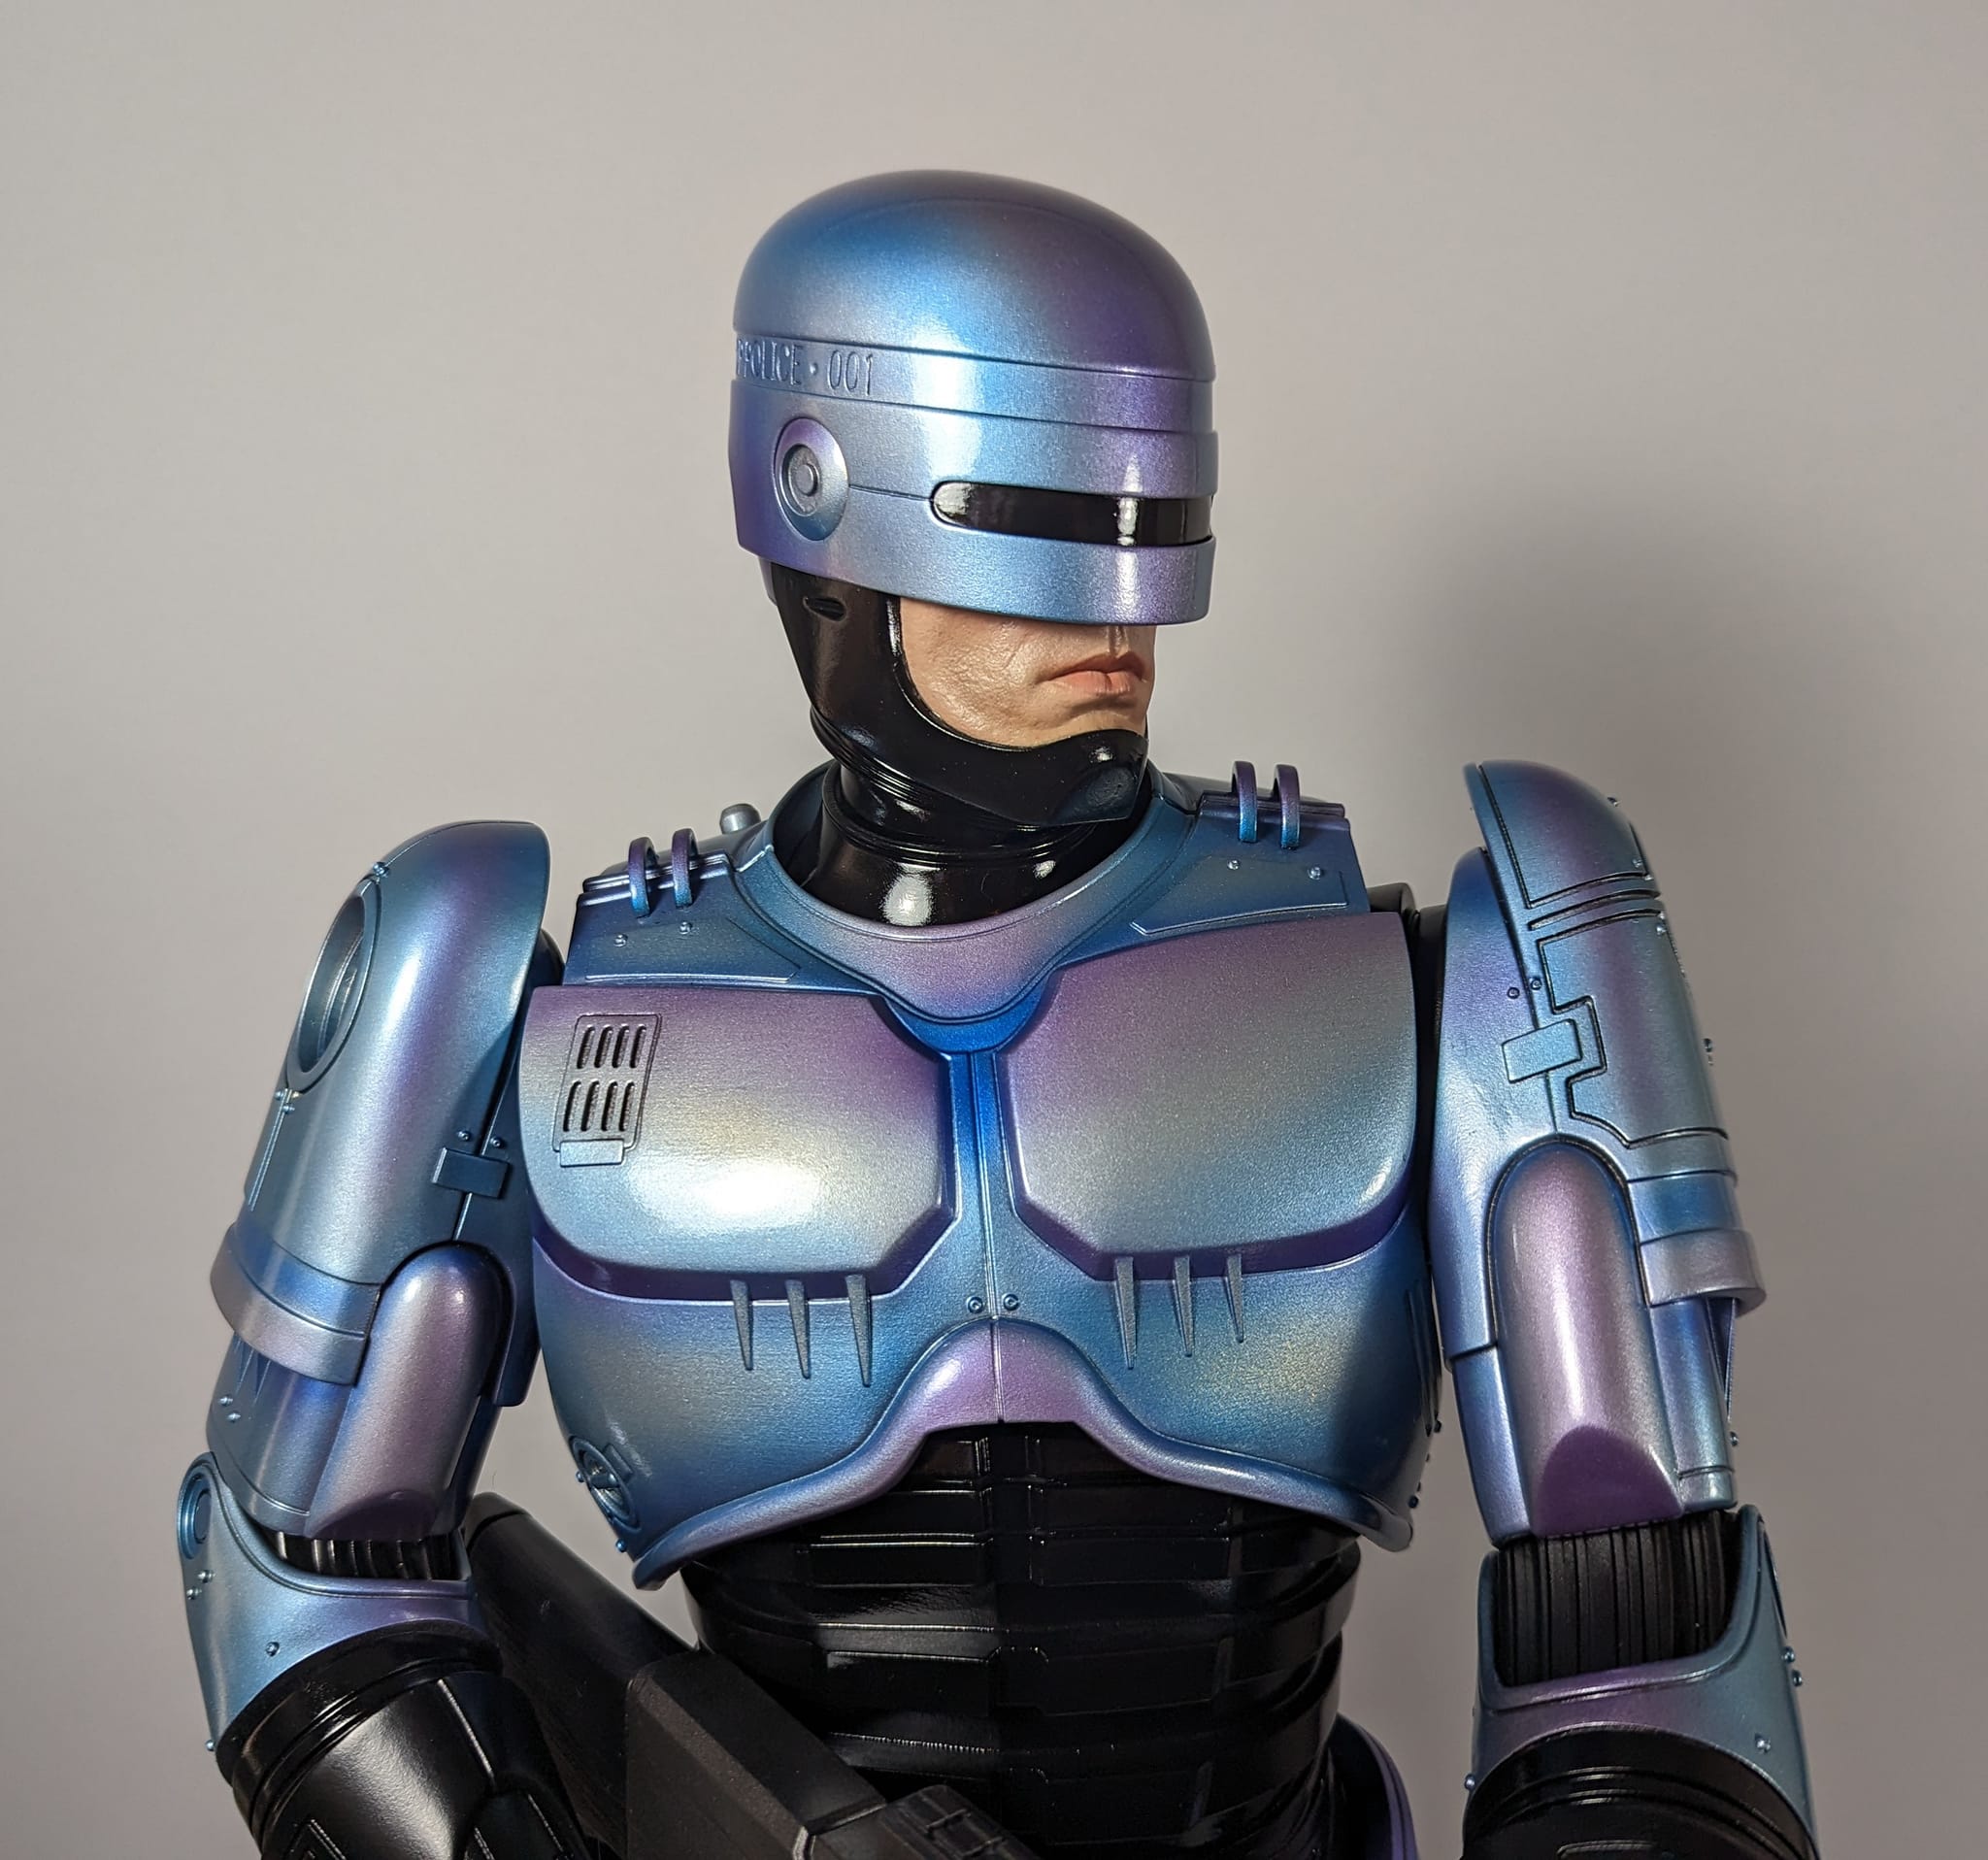 RoboCop 1:3 Scale Statue by PCS